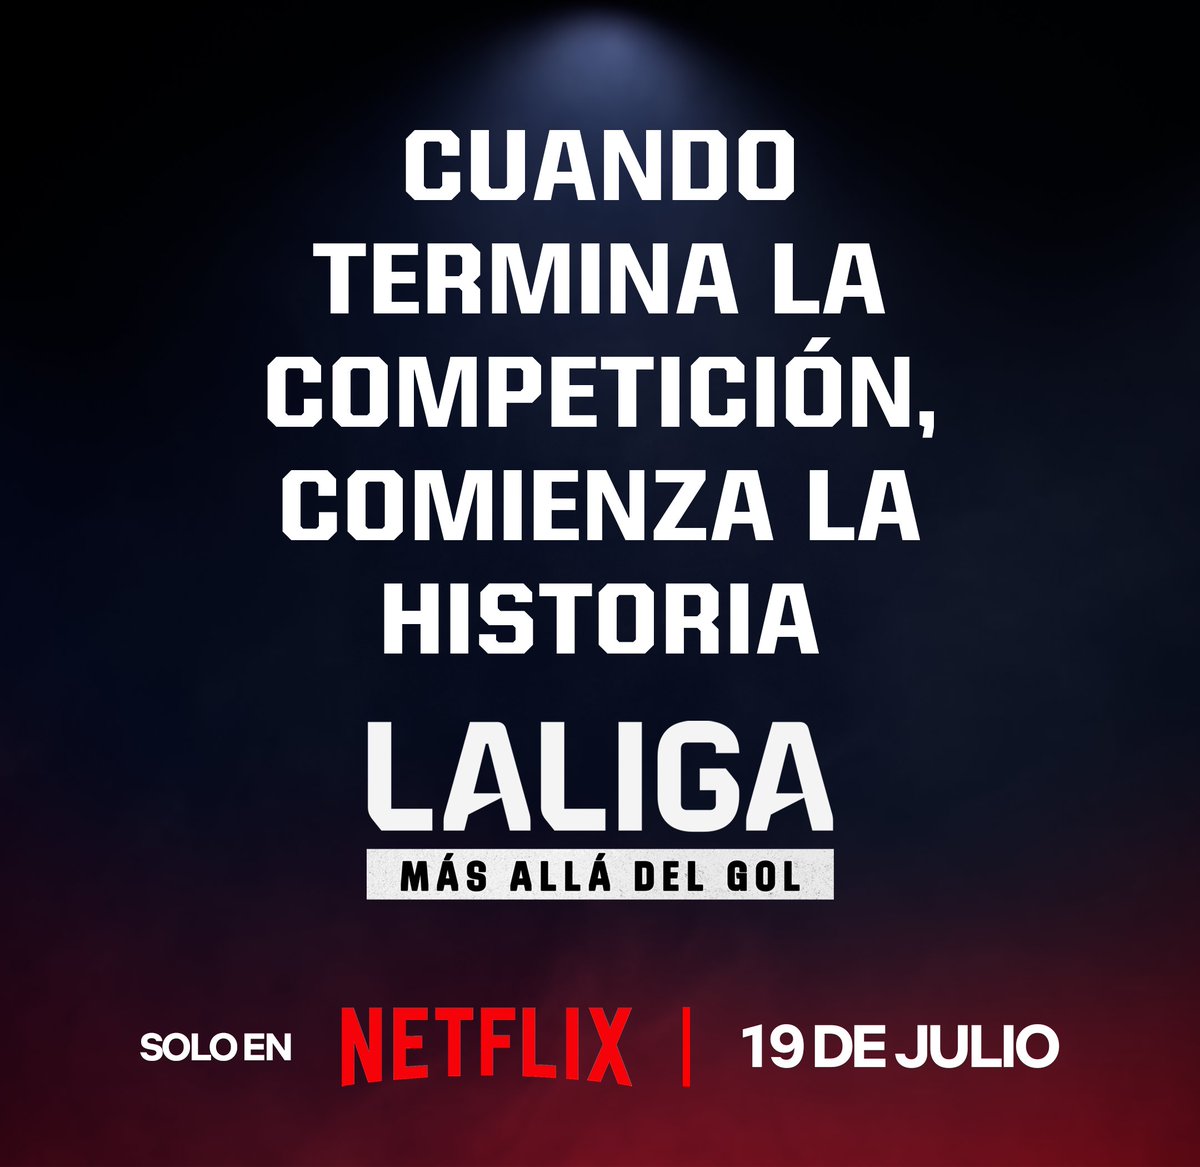 El documental '𝐋𝐀𝐋𝐈𝐆𝐀: 𝐌𝐚́𝐬 𝐚𝐥𝐥𝐚́ 𝐝𝐞𝐥 𝐠𝐨𝐥' llega a @NetflixEs el 19 de julio 🎞️ Prepárate para ver el fútbol como nunca lo habías visto con @LALIGA: bit.ly/3wS1K7Z #NetflixLALIGA